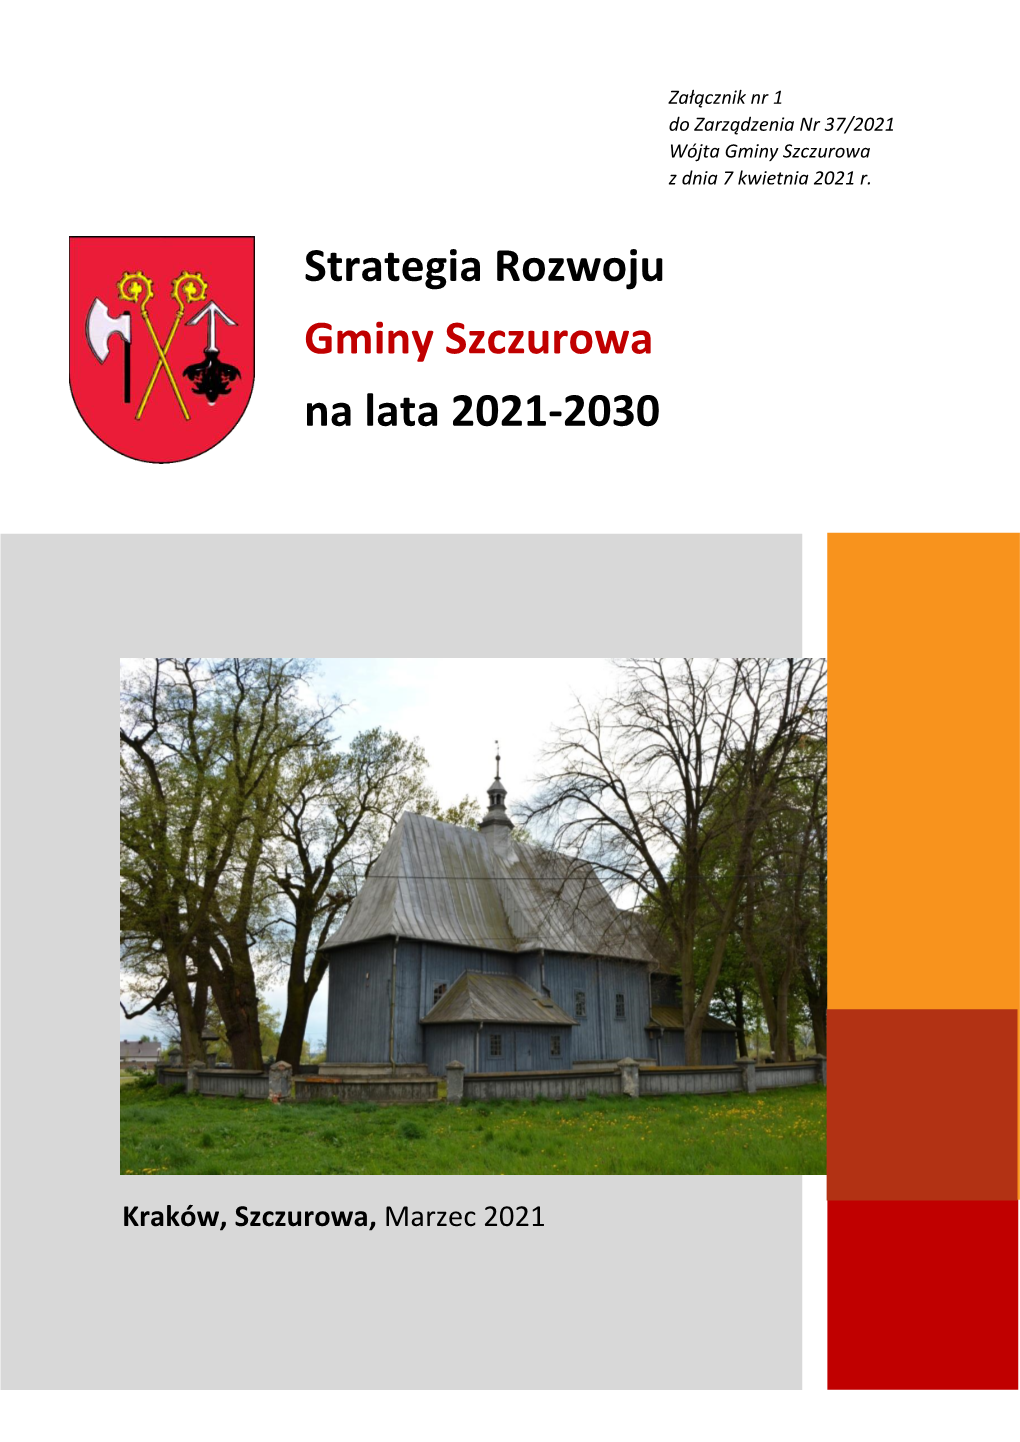 Strategia Rozwoju Gminy Szczurowa Na Lata 2021-2030